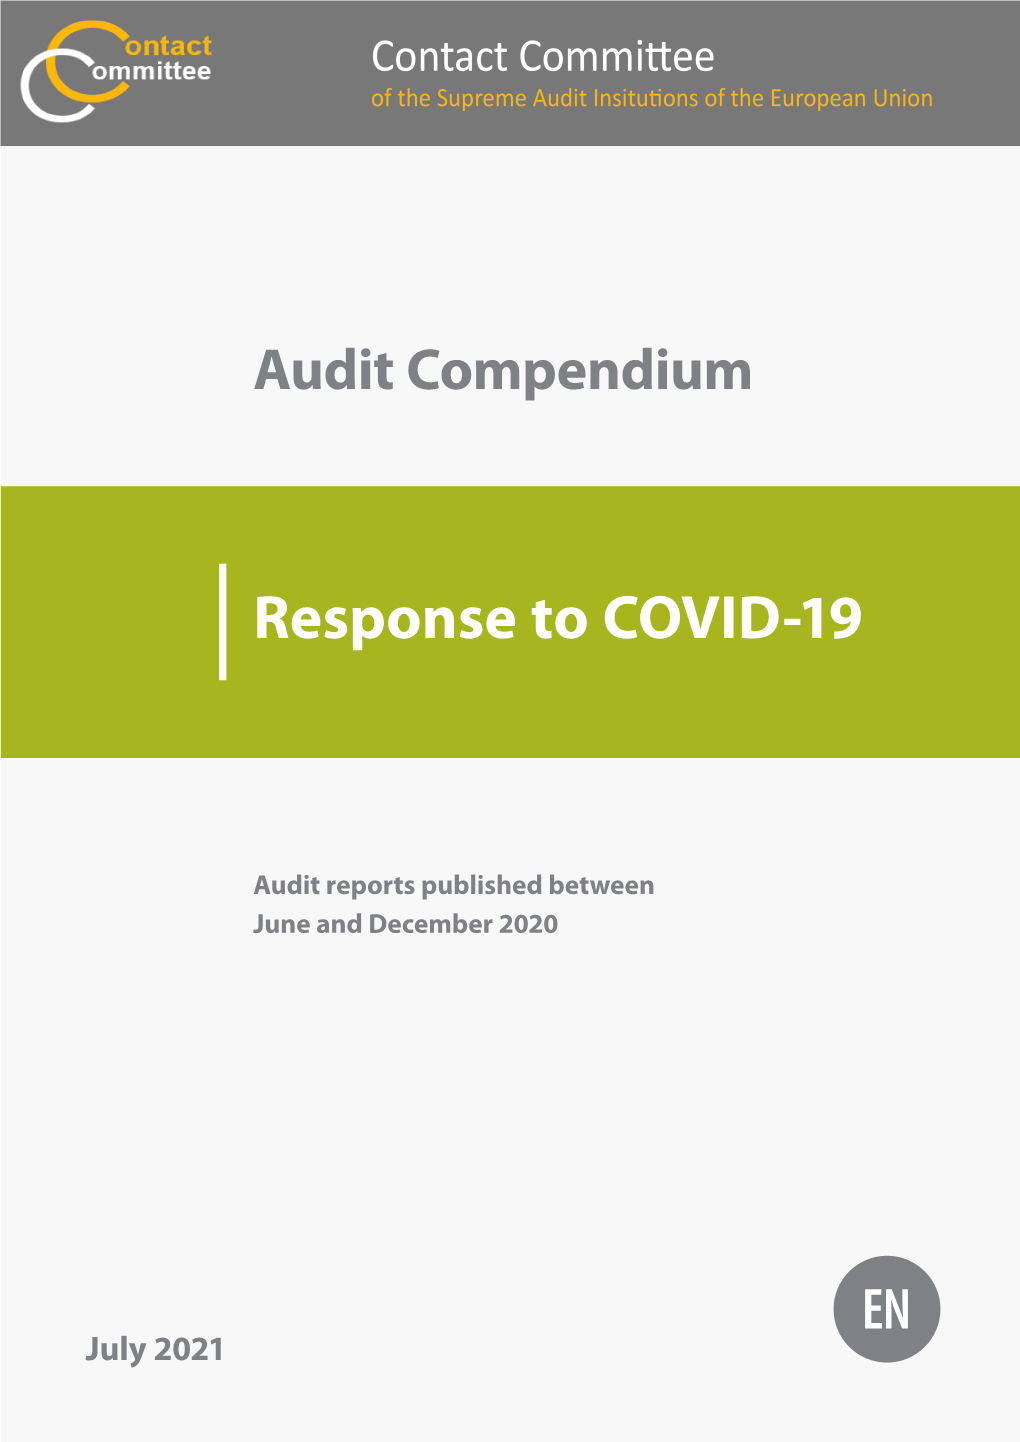 CC Audit Compendium: Response to COVID-19